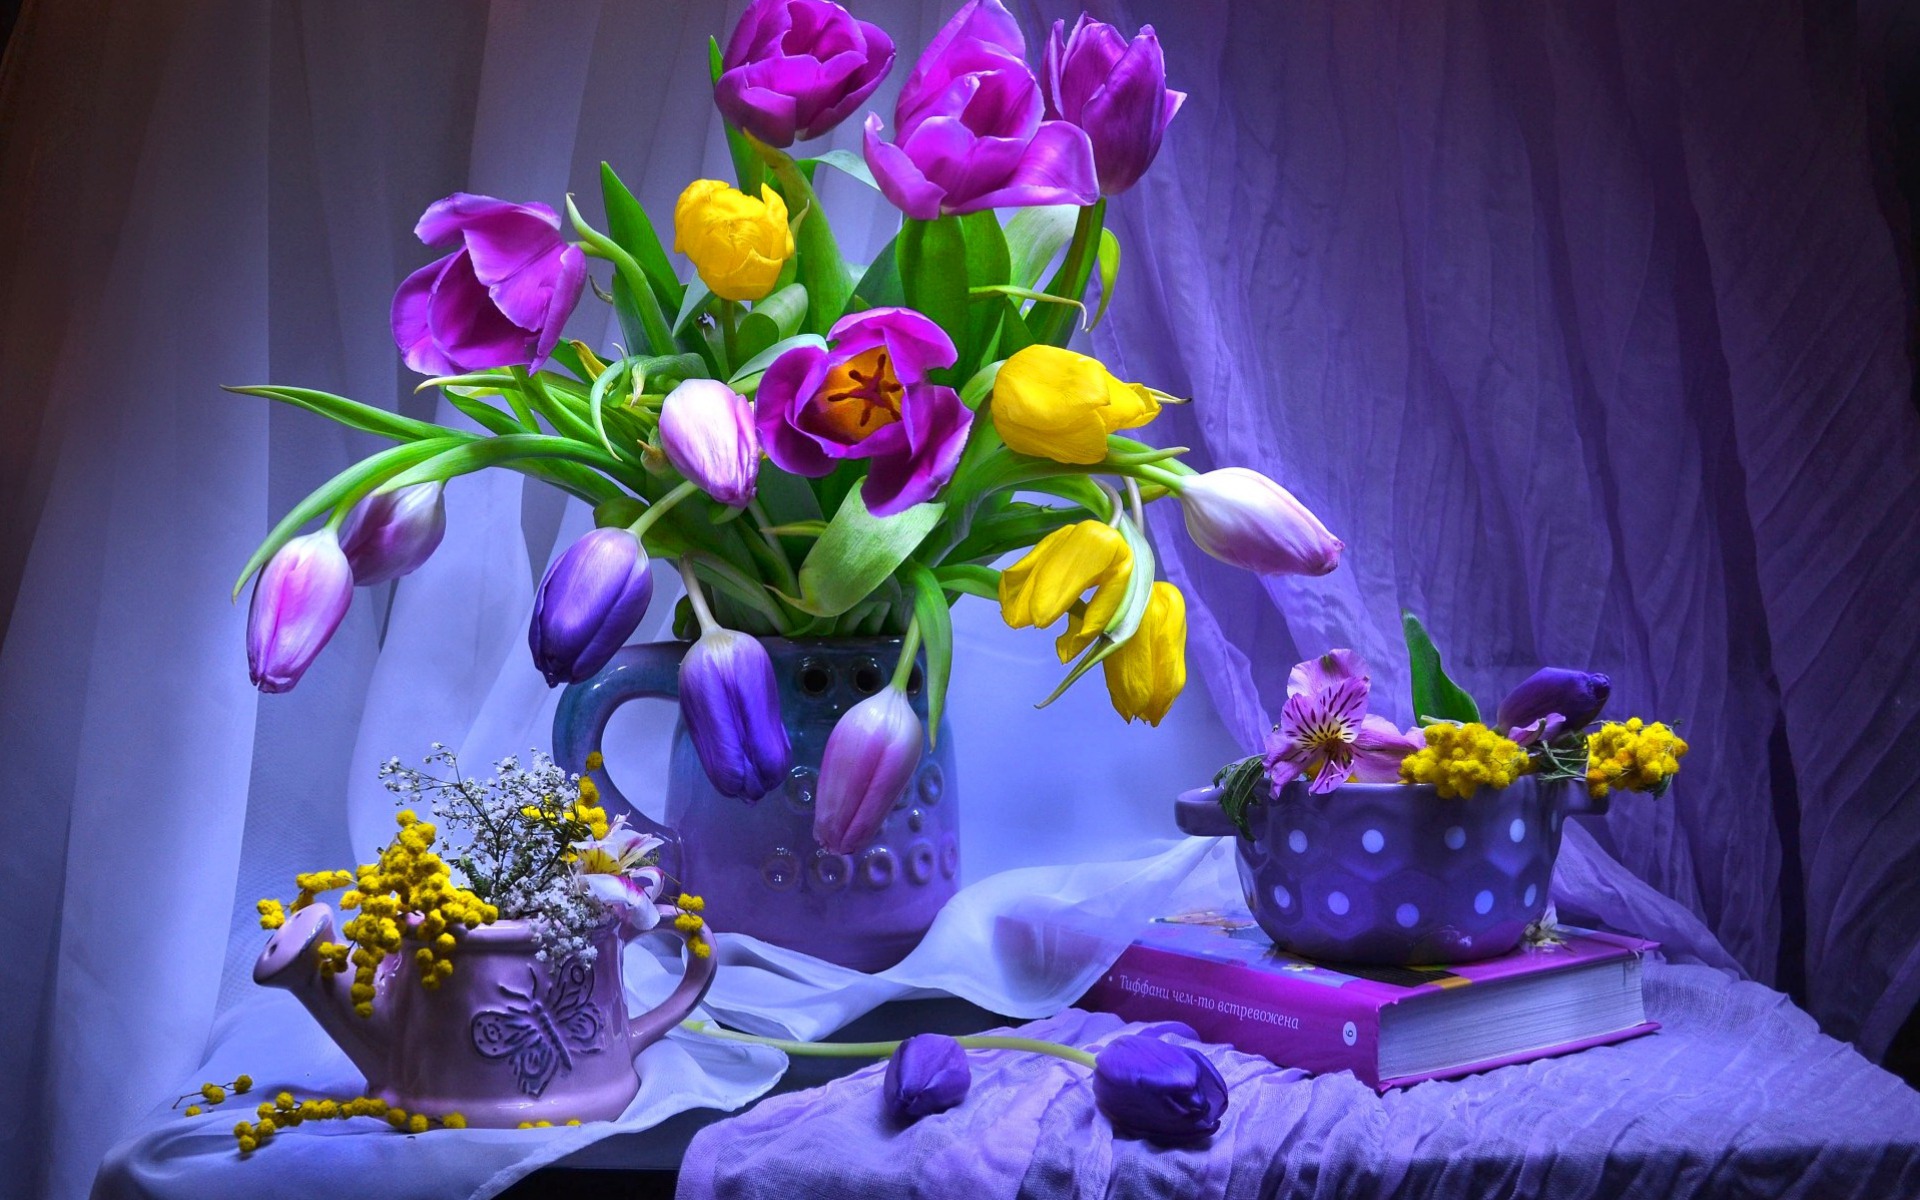 Descarga gratuita de fondo de pantalla para móvil de Colores, Púrpura, Vistoso, Libro, Tulipán, Fotografía, Flor Amarilla, Flor Purpura, Bodegón, Lanzador.